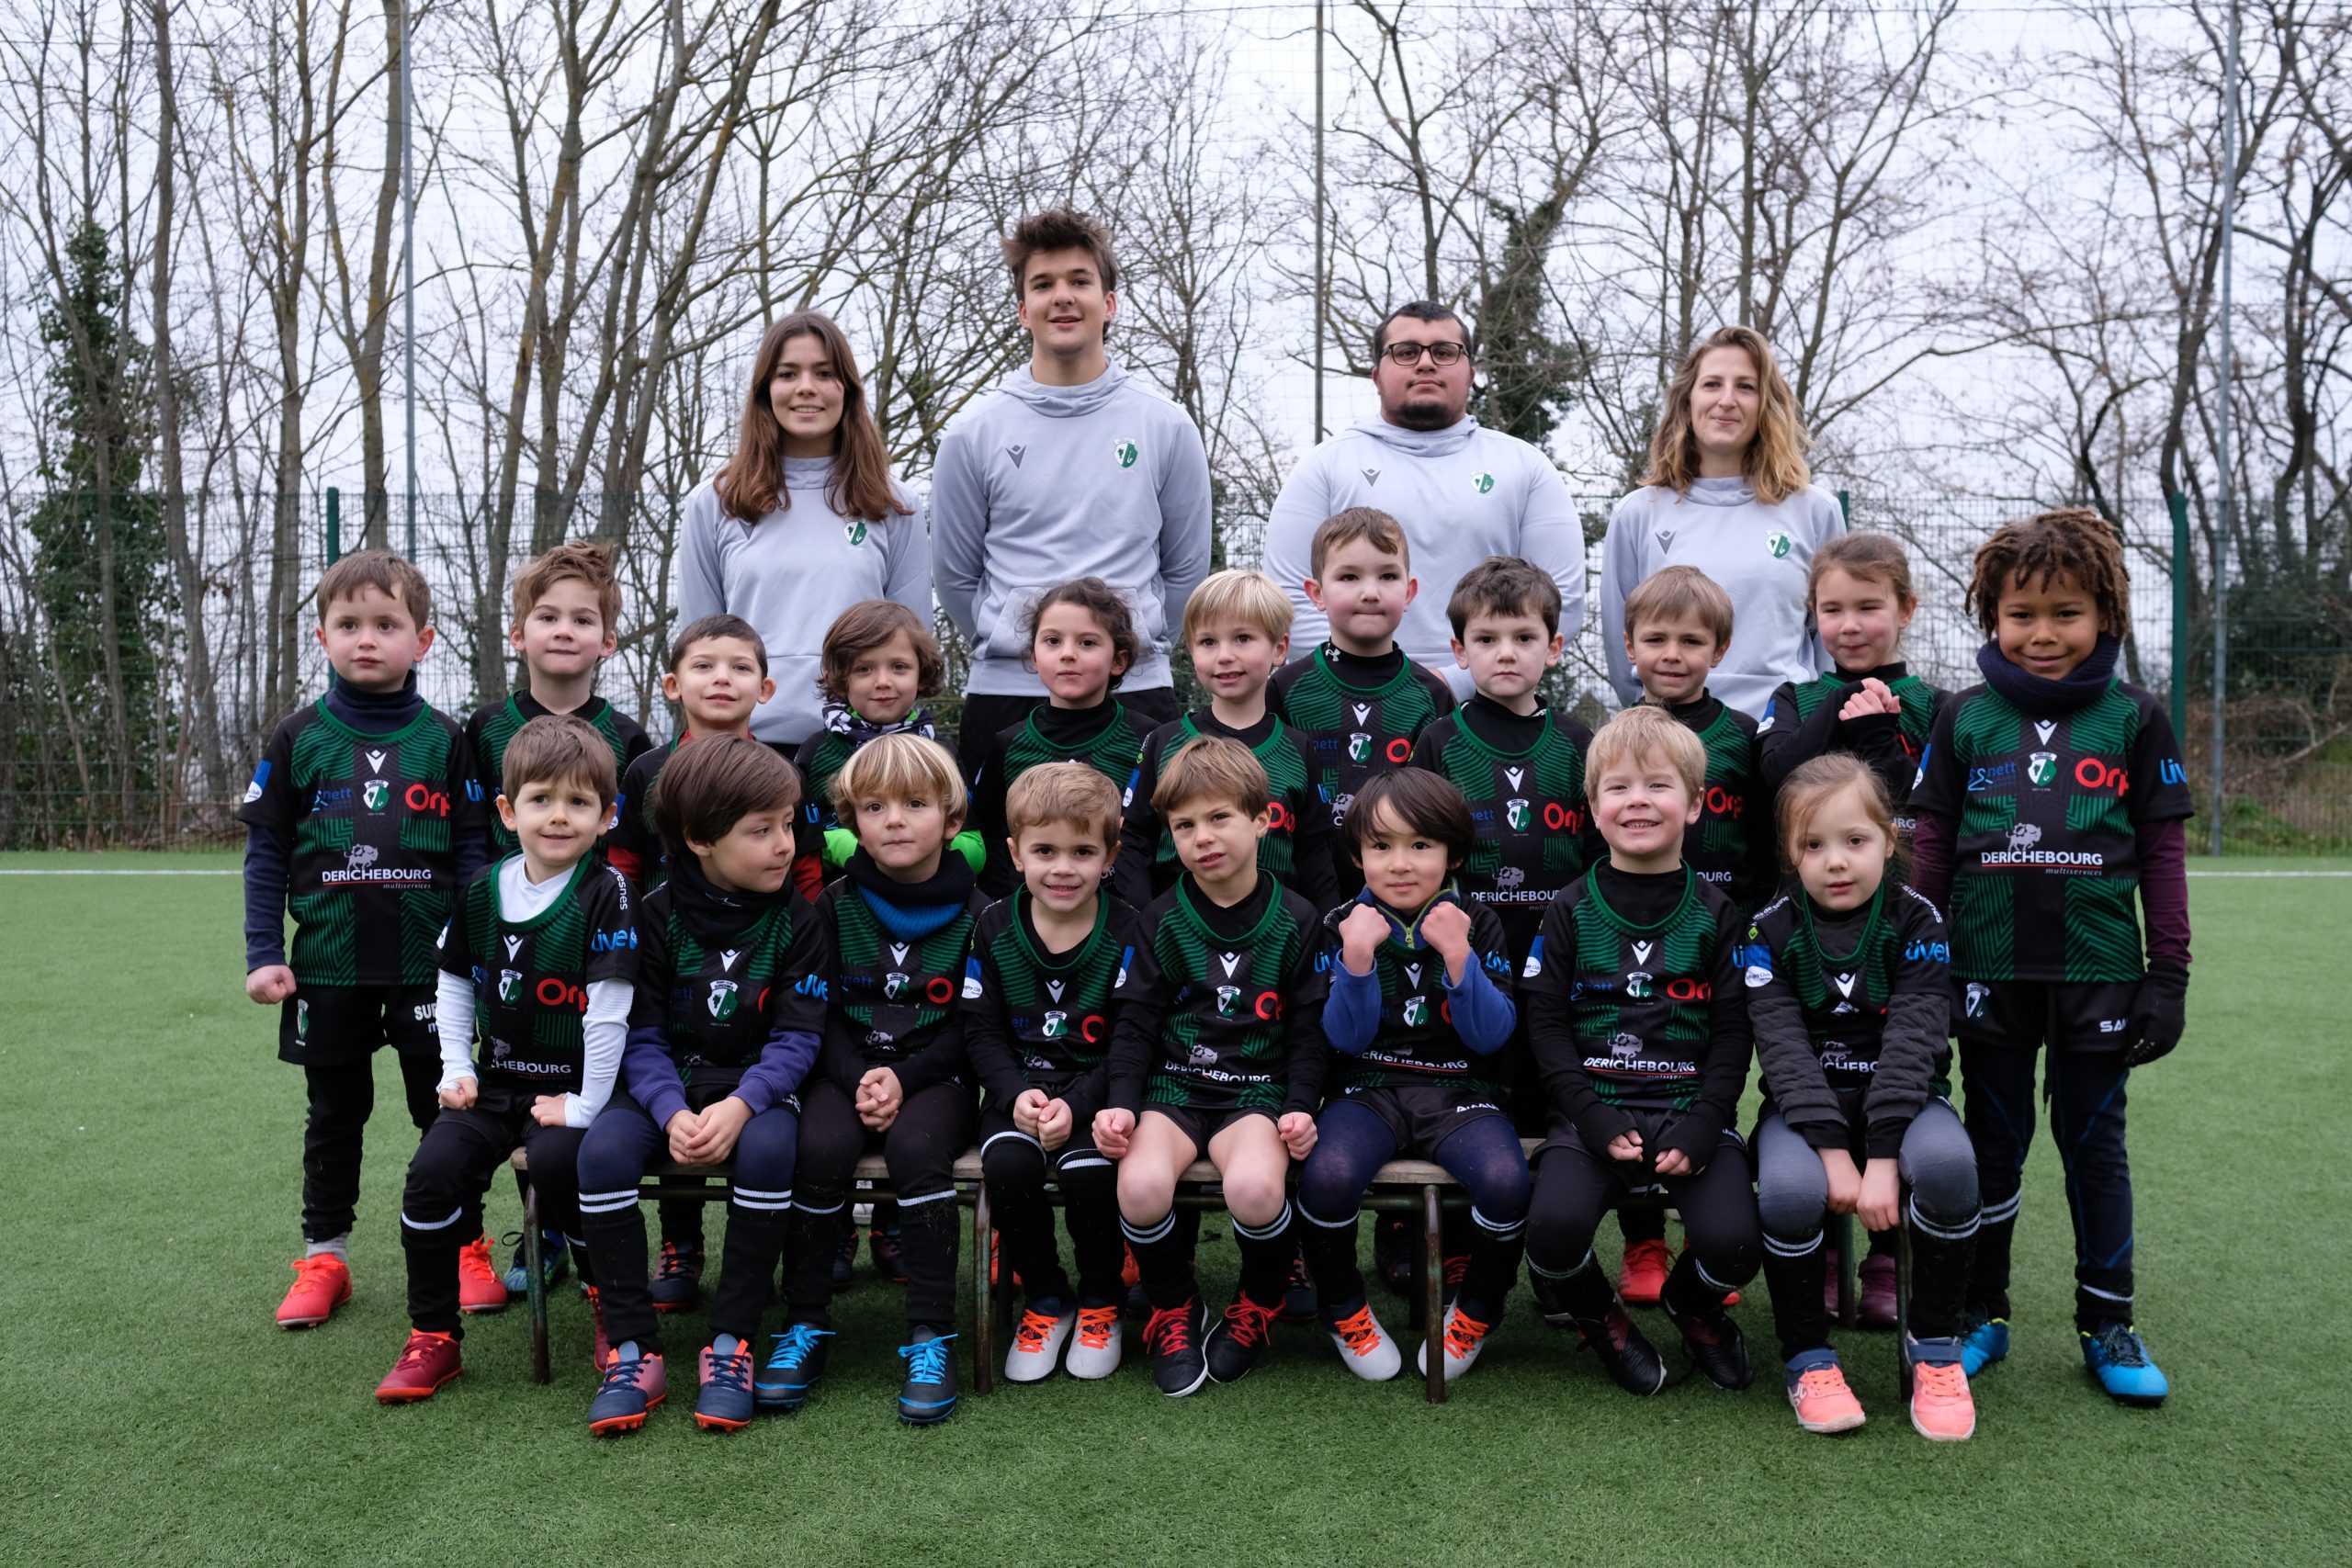 Les Premiers Pas du Rugby Club Suresnes Hauts-de-Seine / Saison 2018-2019